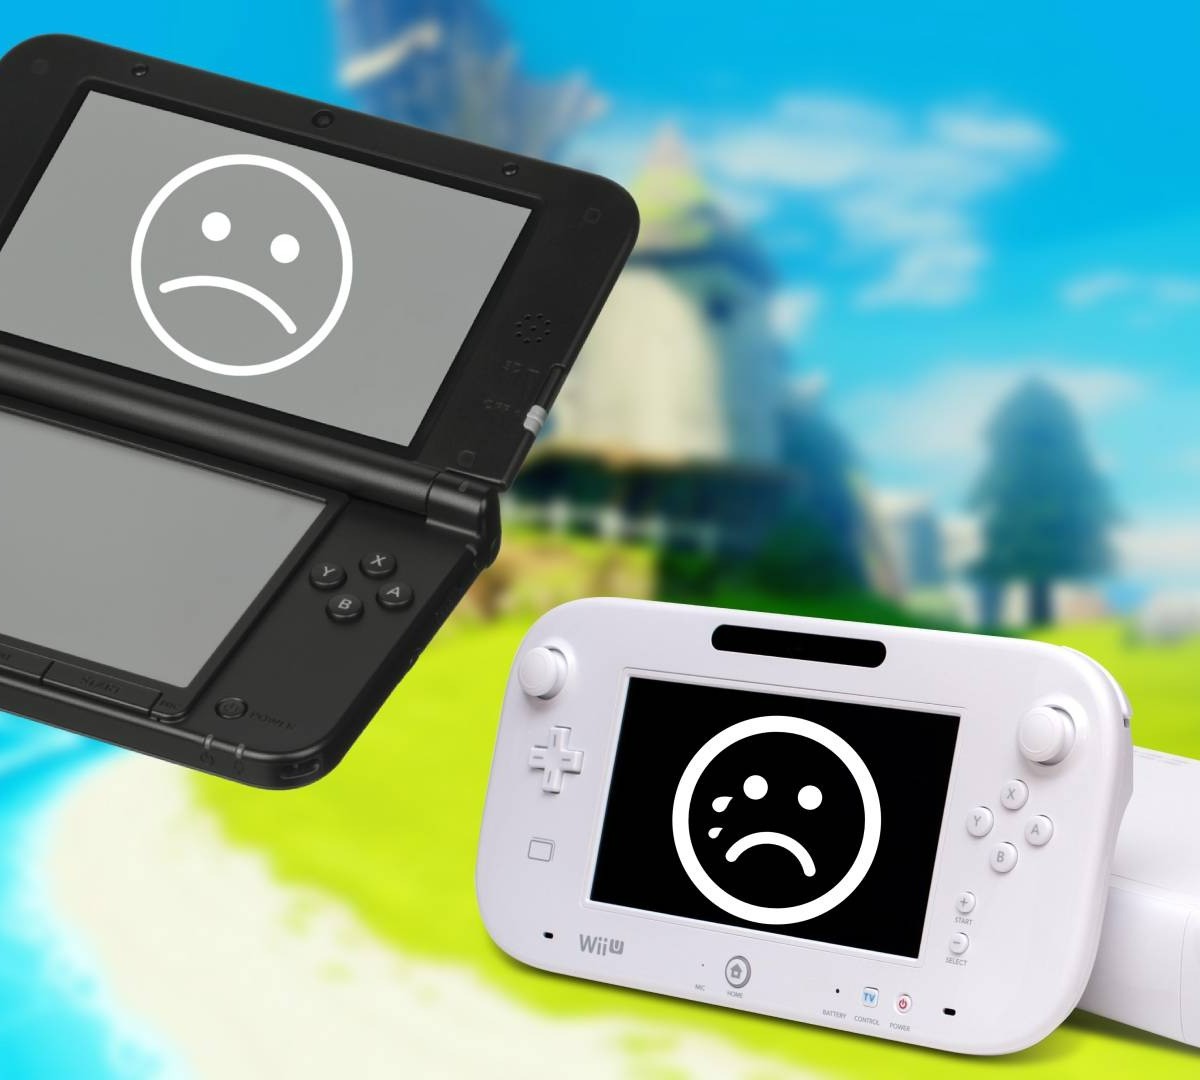 Nintendo: gamer compra TODOS os jogos de Wii e 3DS